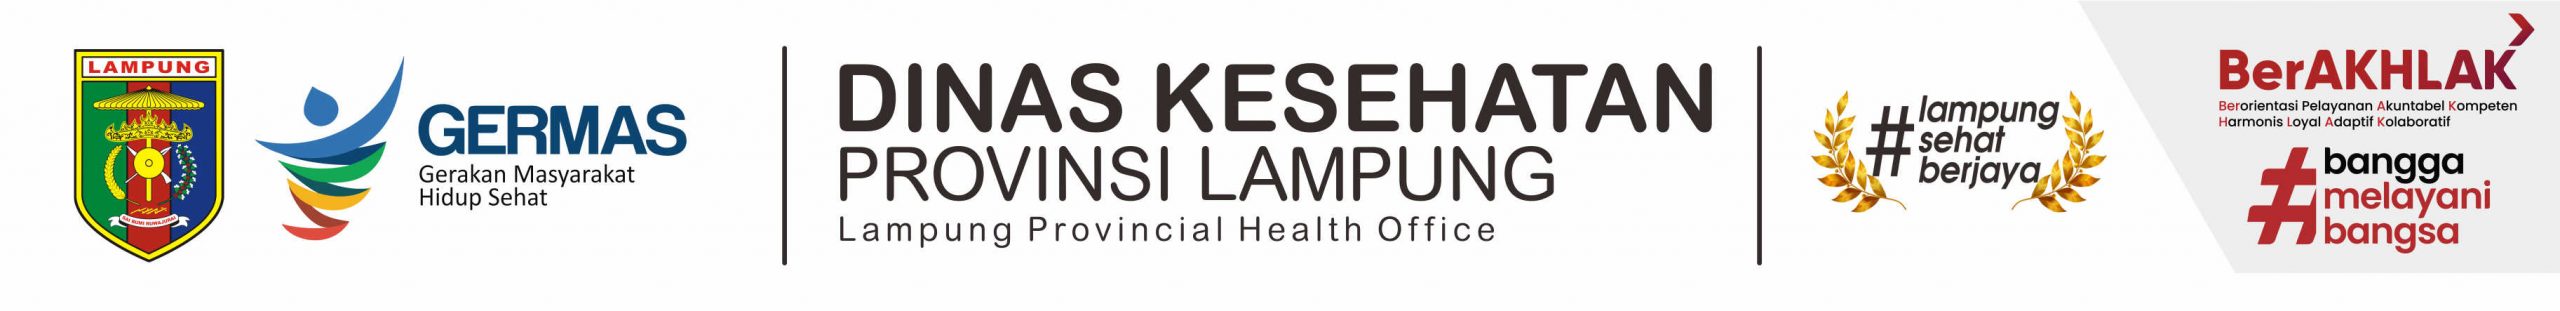 Dinas Kesehatan Provinsi Lampung